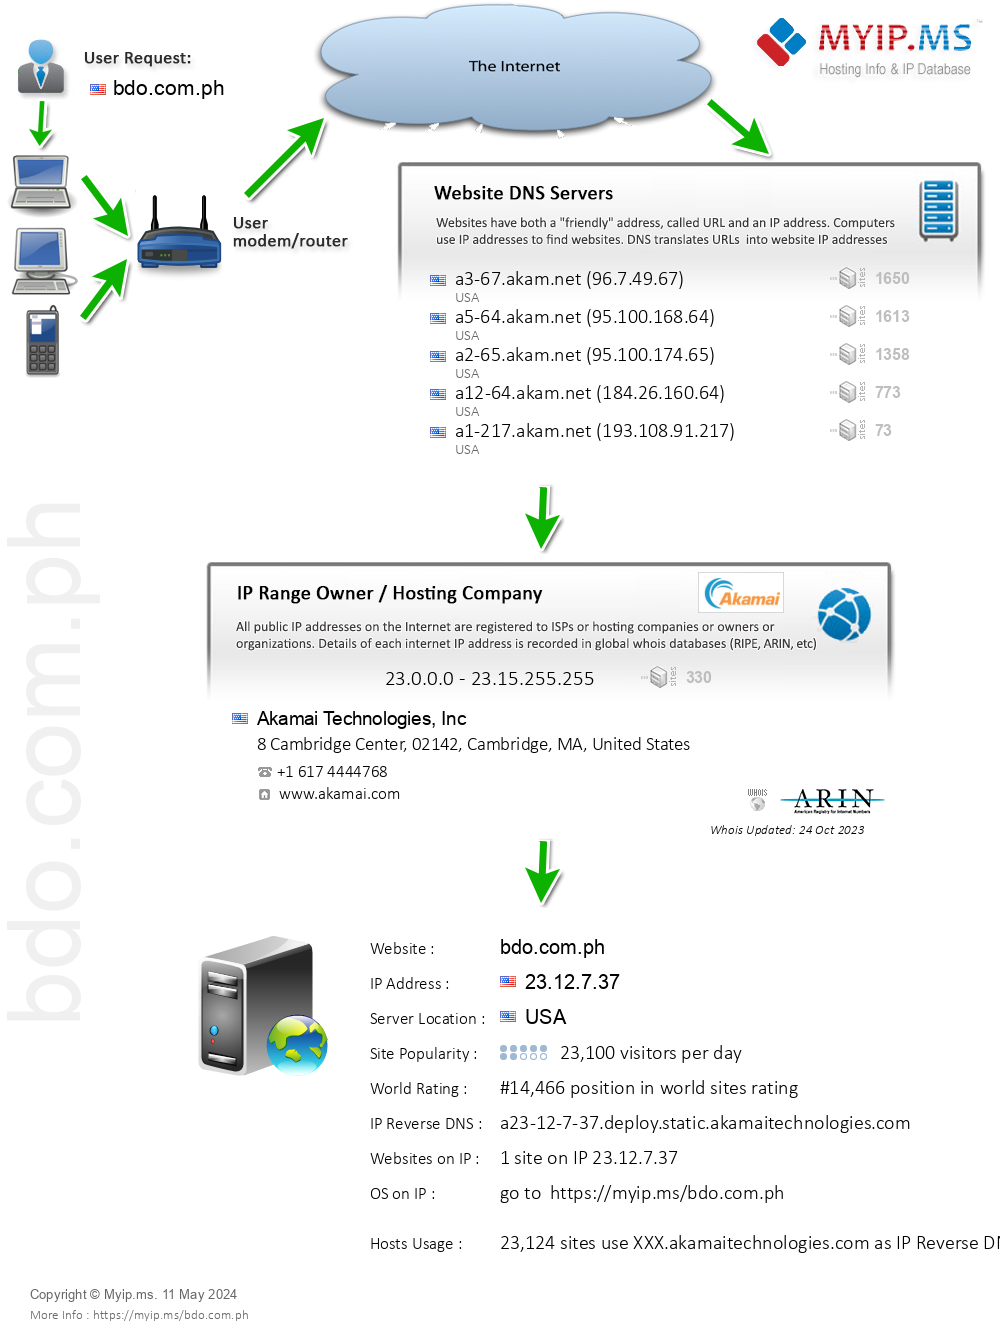 Bdo.com.ph - Website Hosting Visual IP Diagram